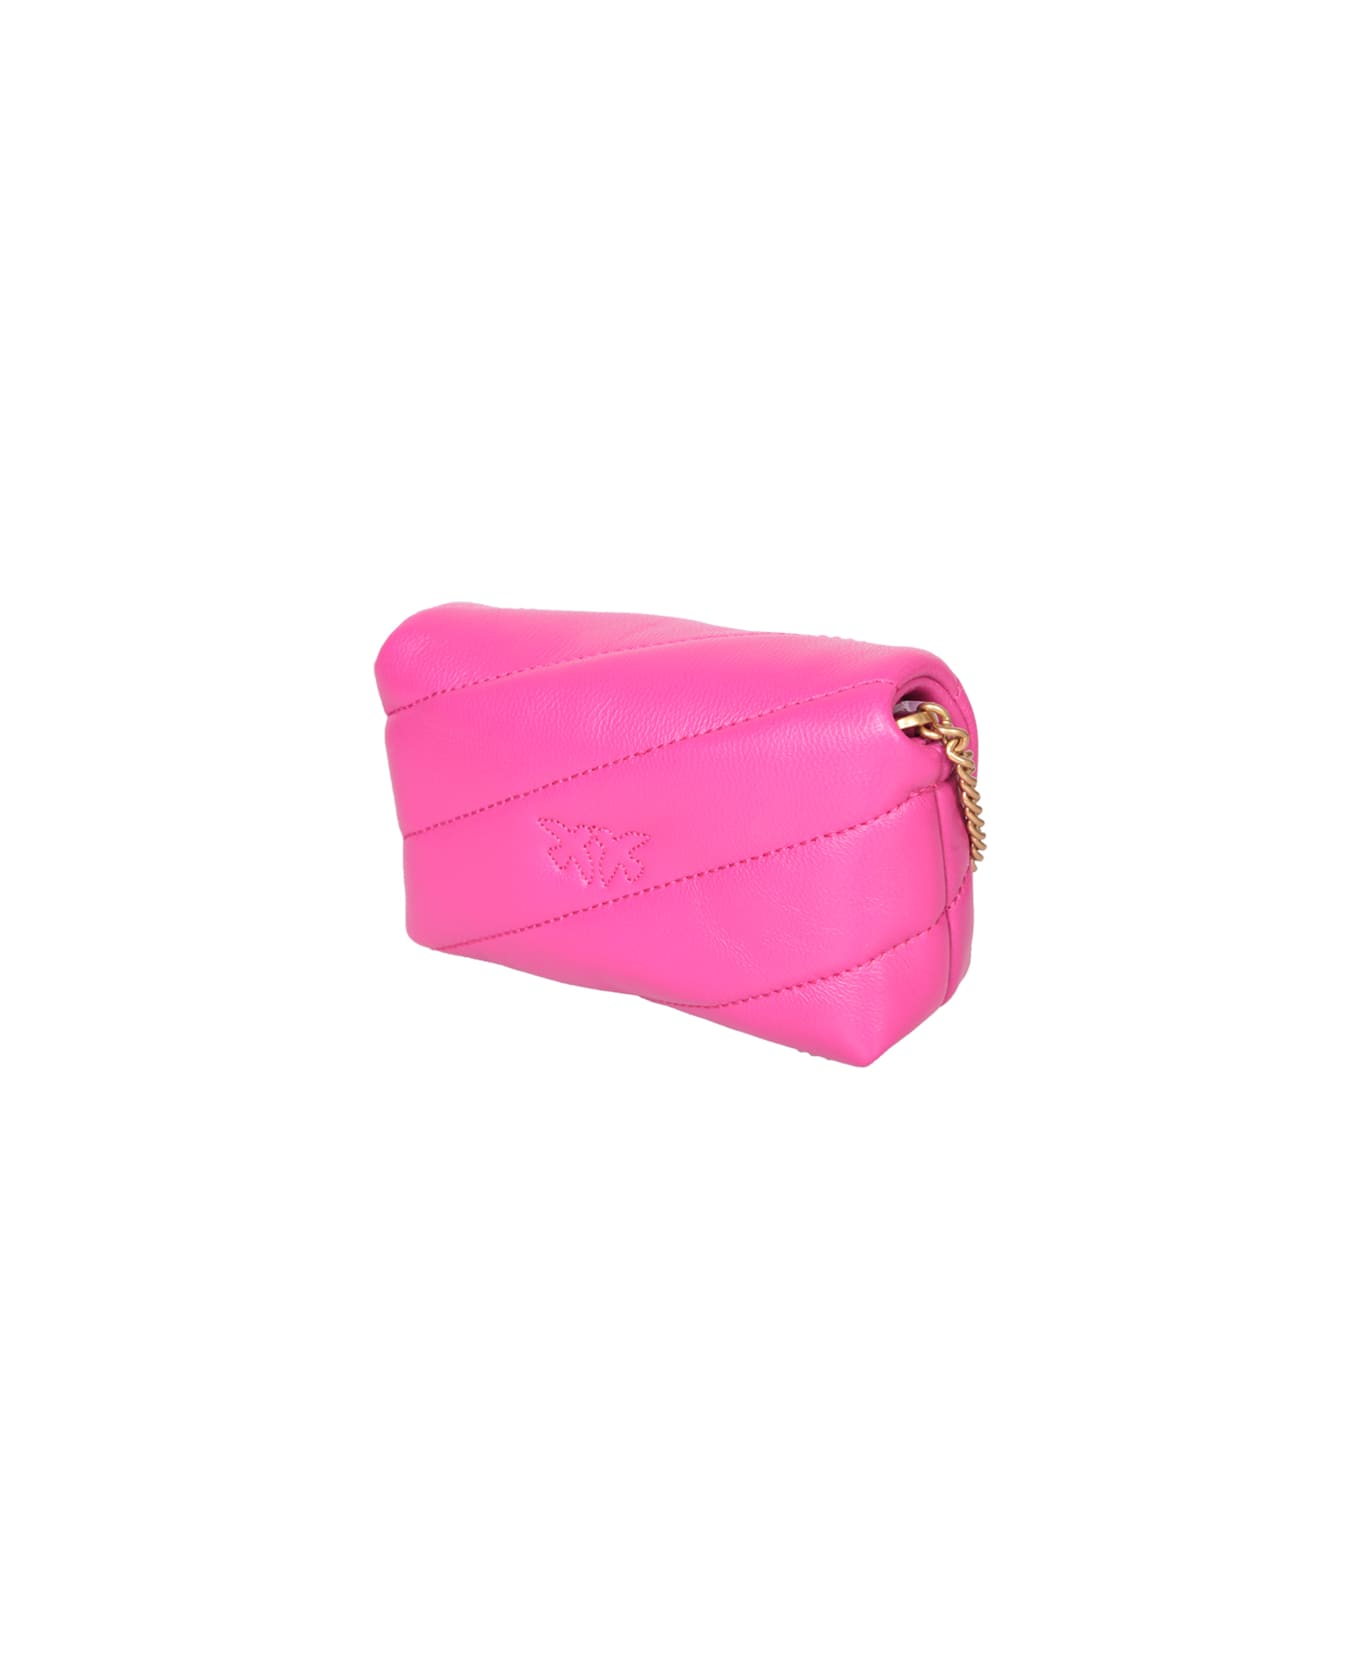 Pinko Love Puff Micro Fuchsia Bag - Pink